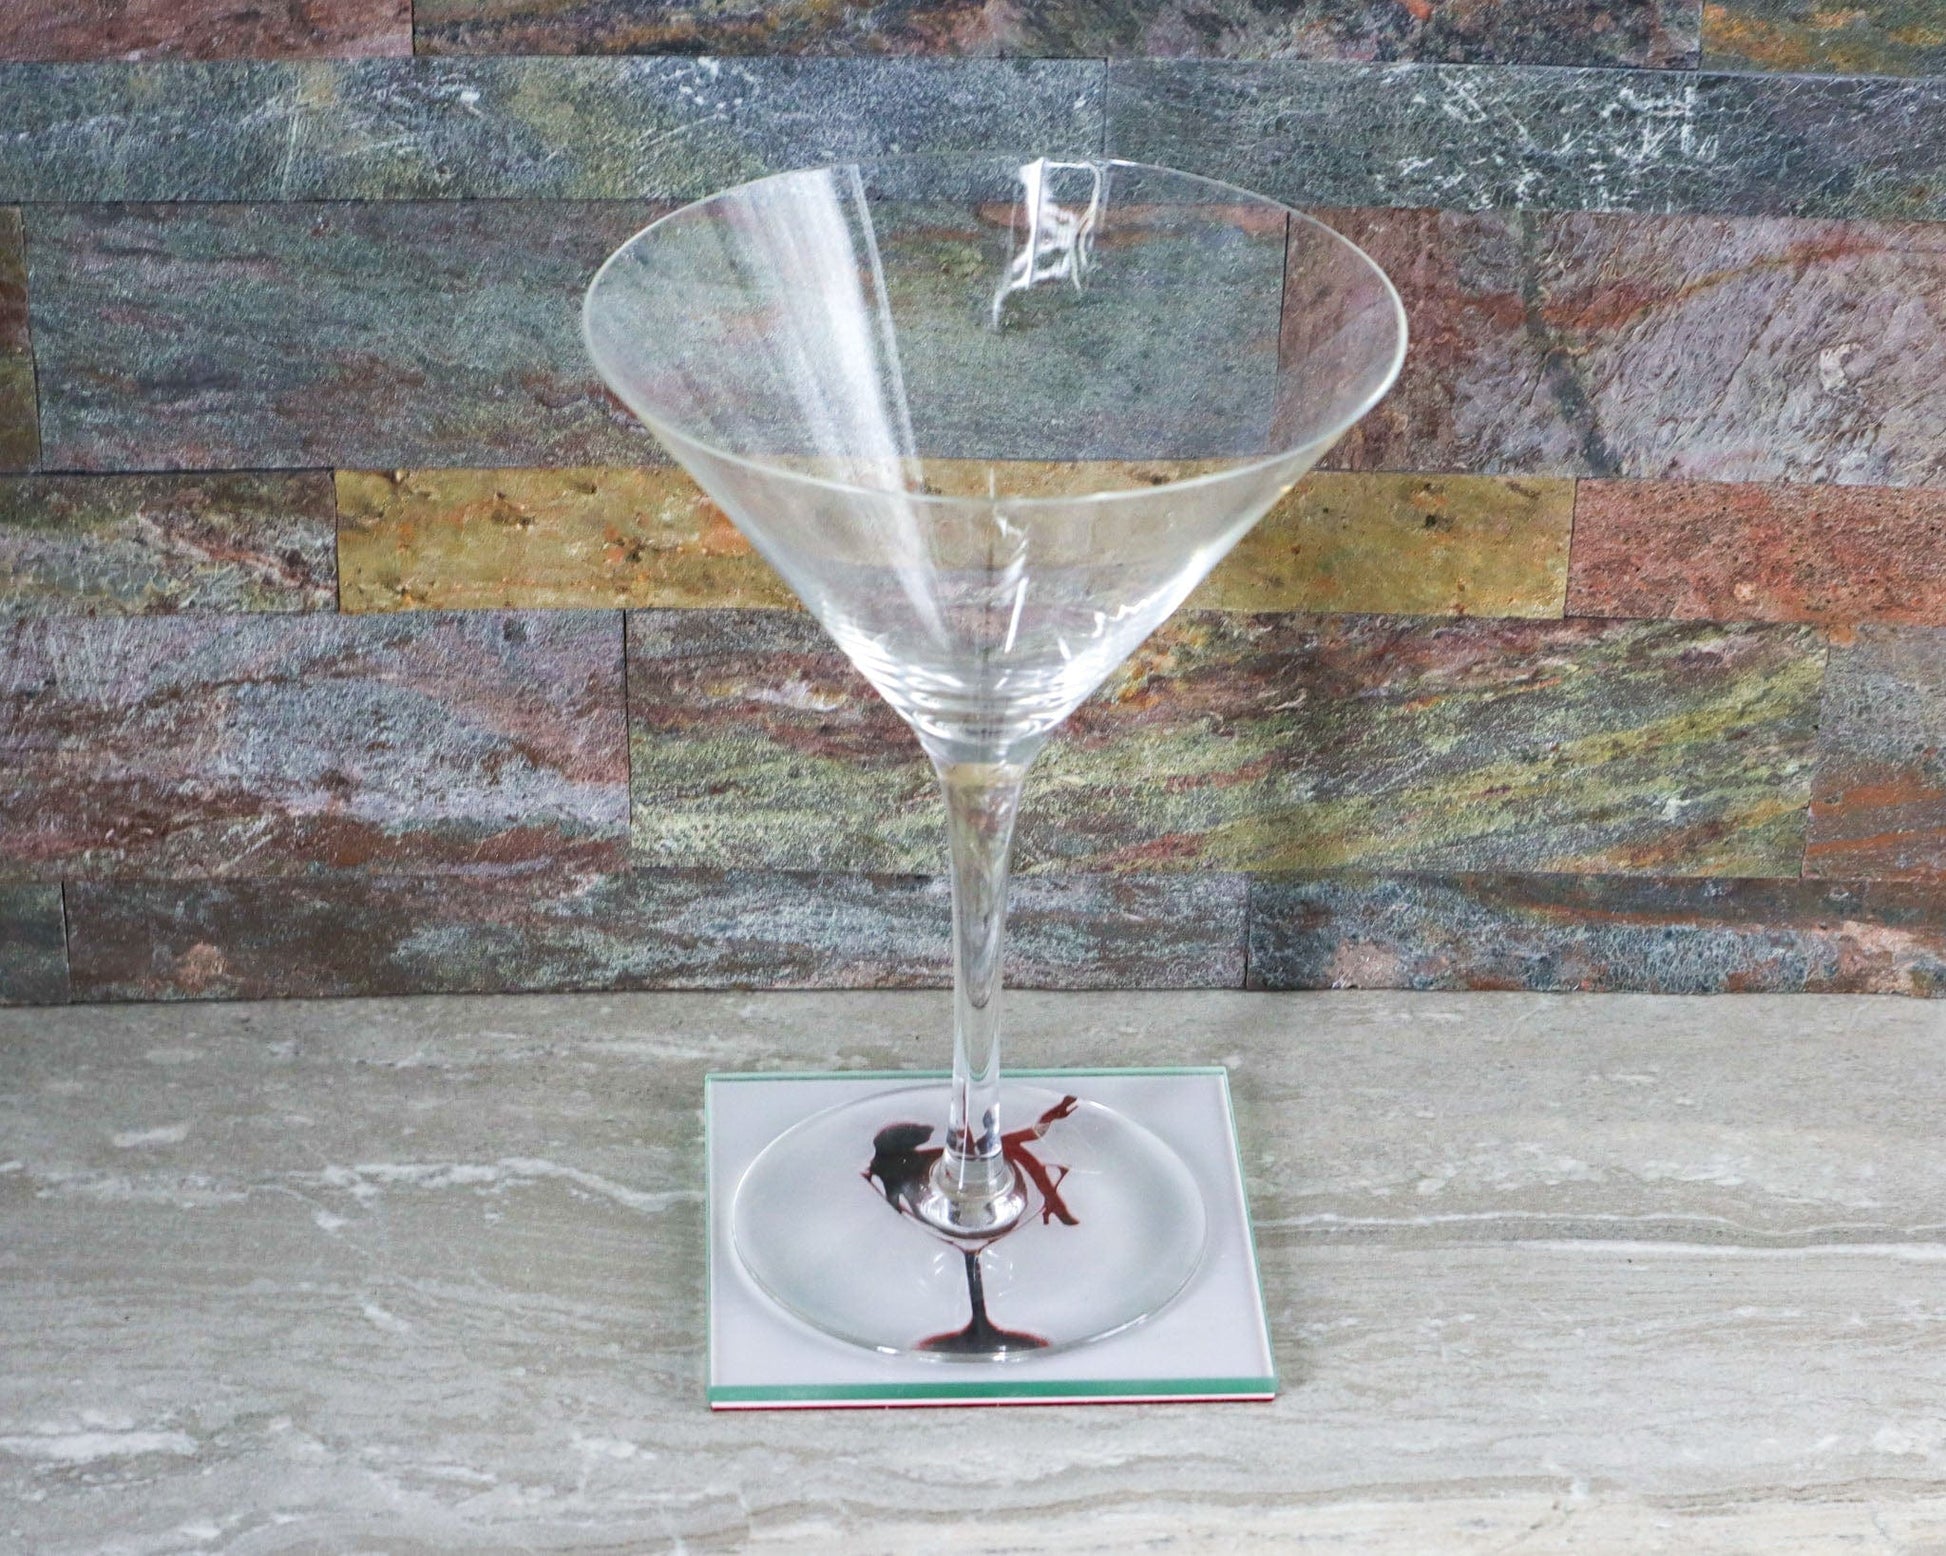 LightAndTimeArt Coaster Customizable Vintage Pin-Up Martini Glass Coaster Set by LightAndTimeArt